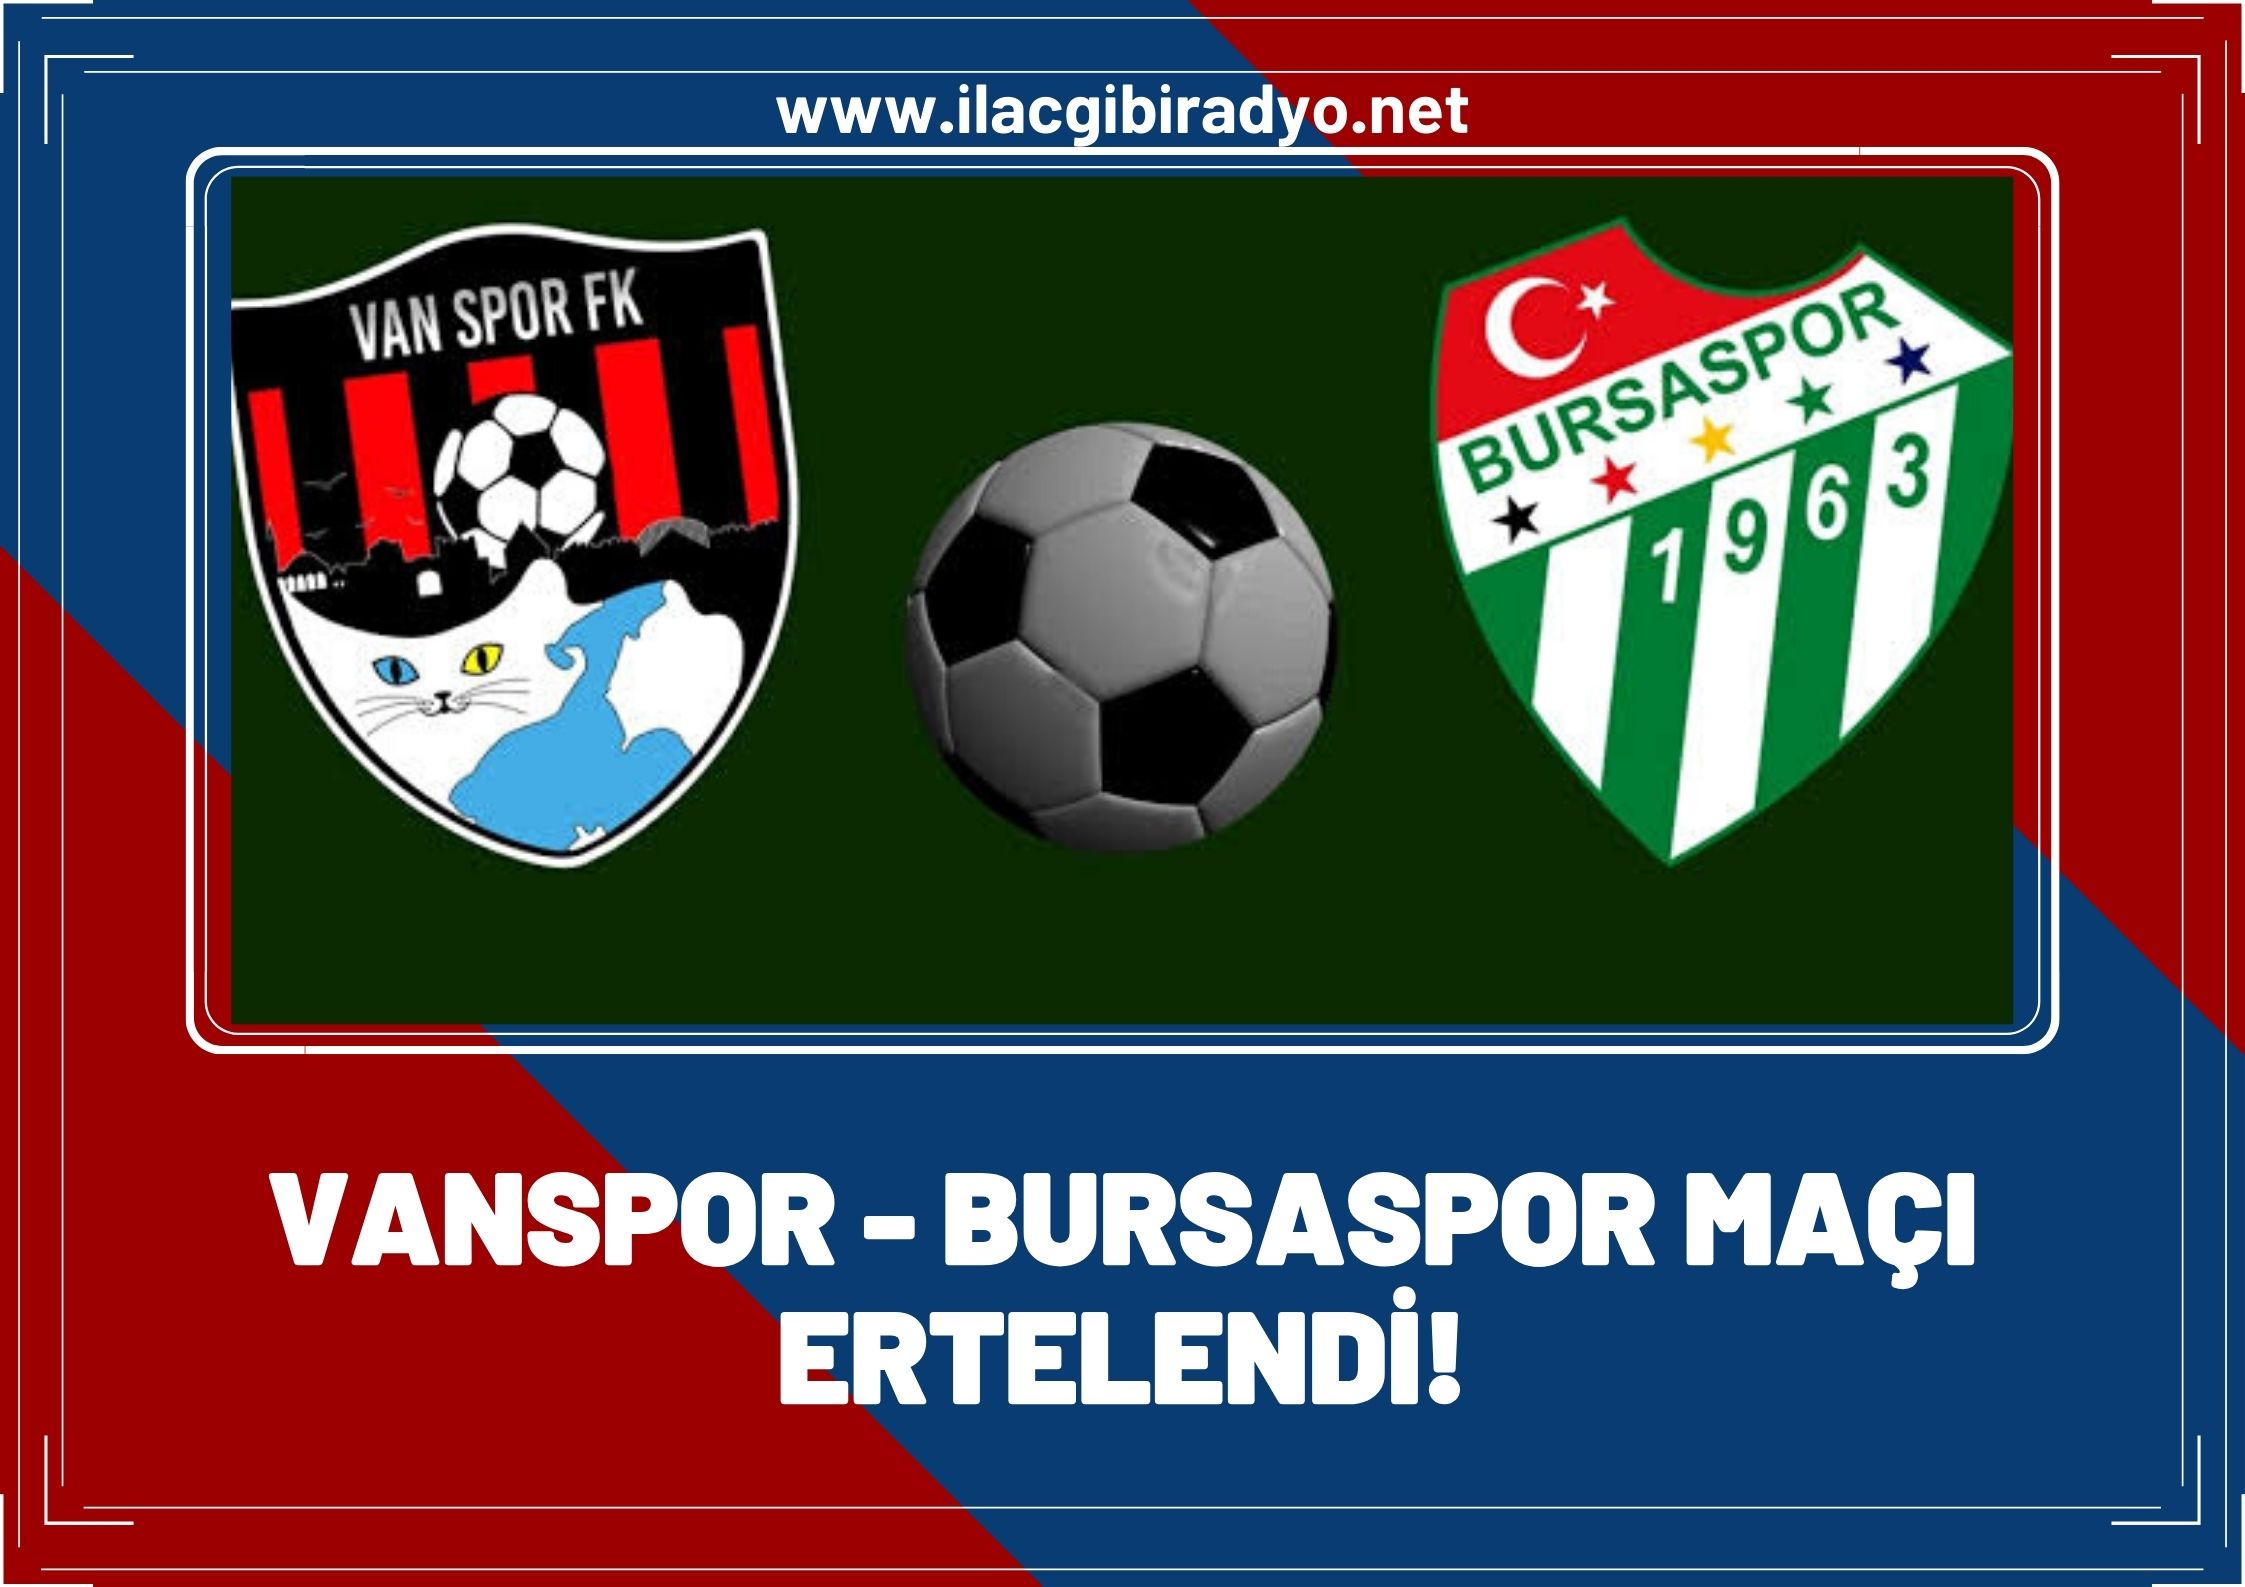 Vanspor - Bursaspor maçı ertelendi